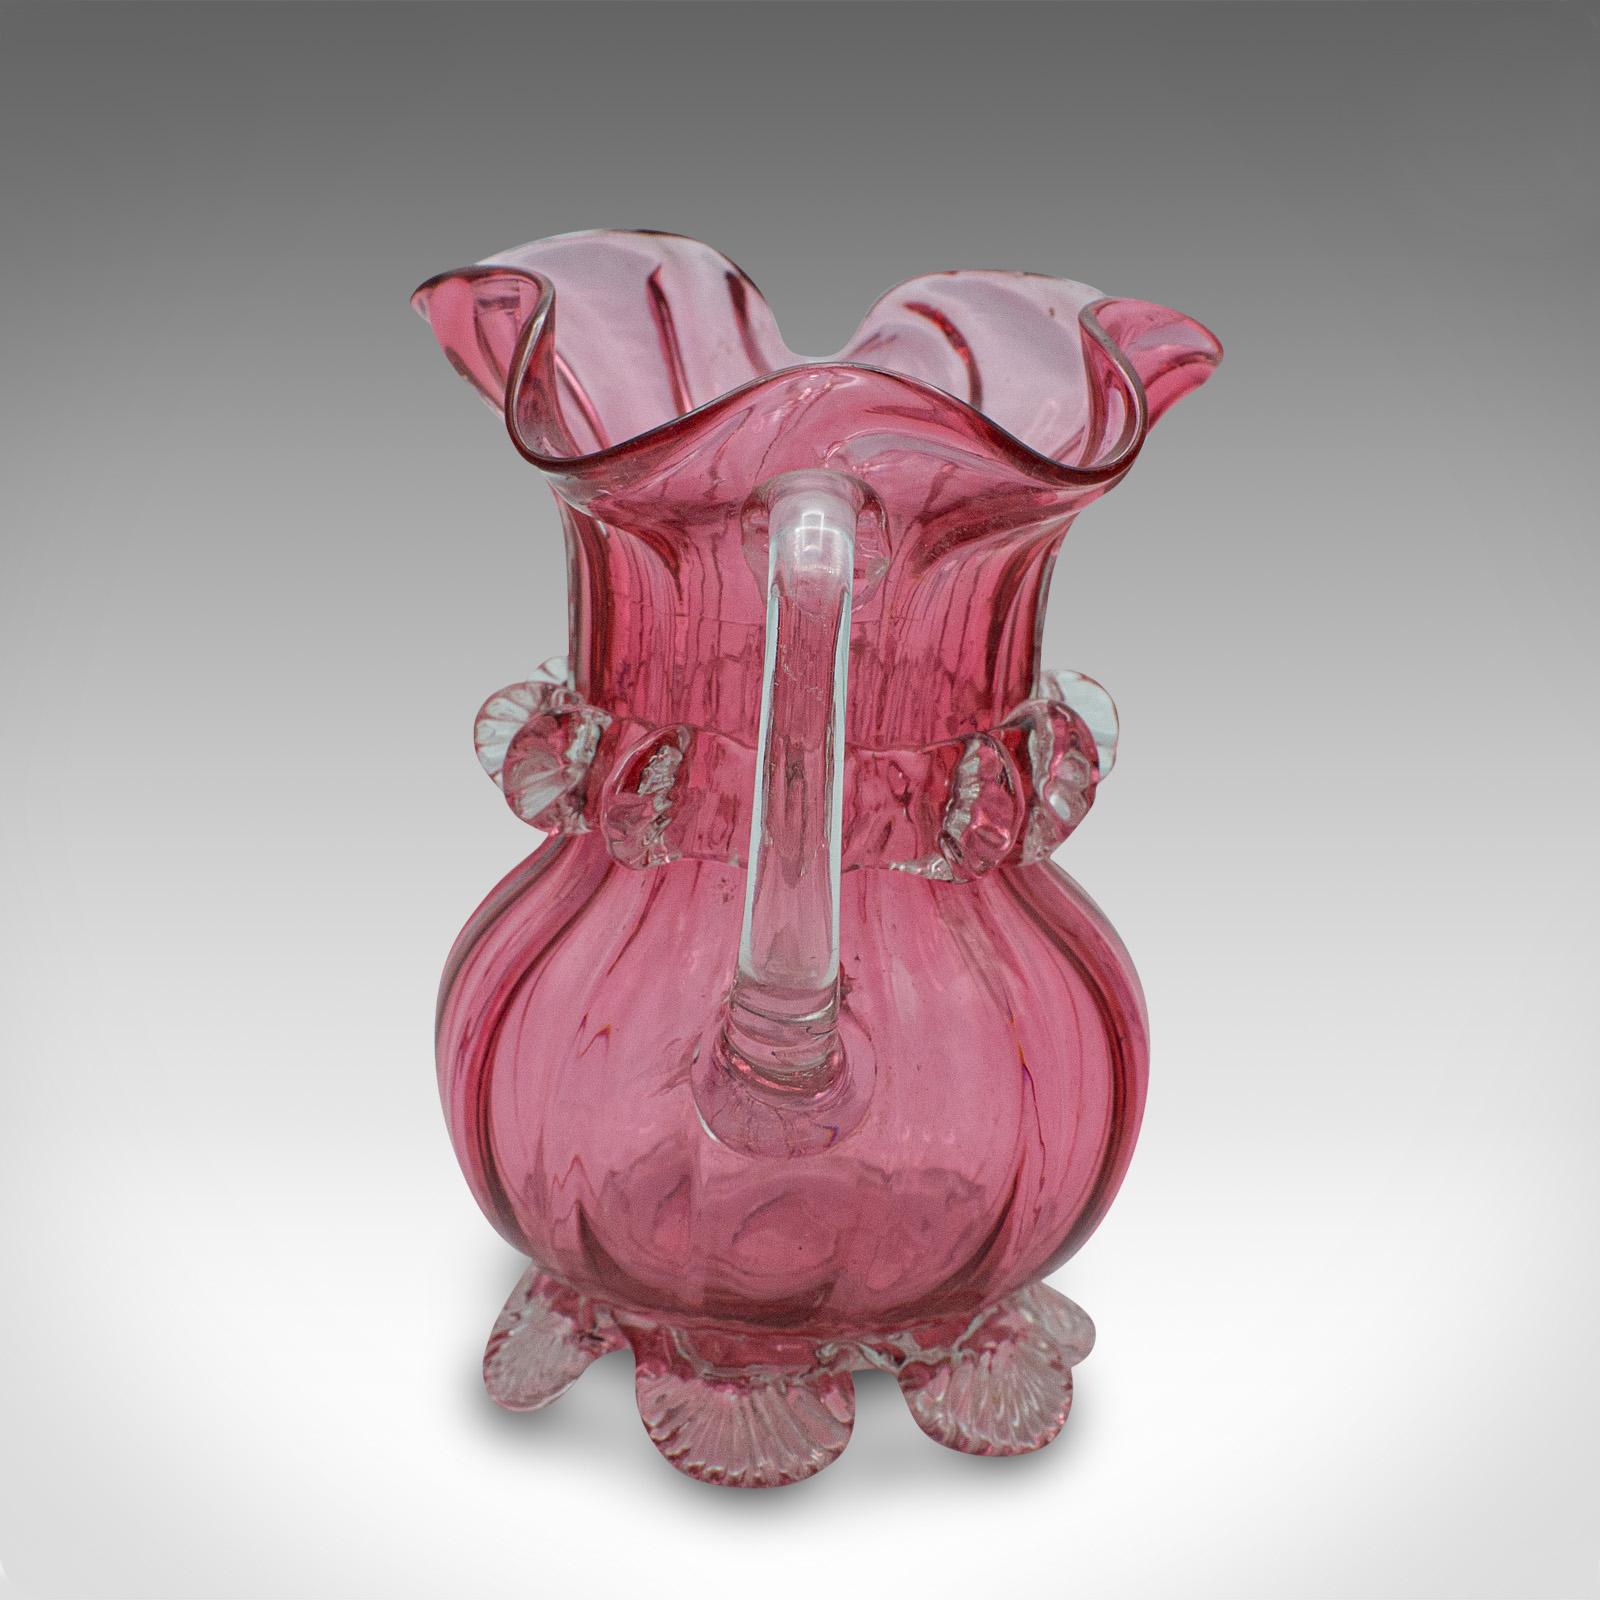 Vintage Cranberry Glass Stem Vase Set, English, Decorative, Flower Slip, Jug For Sale 3